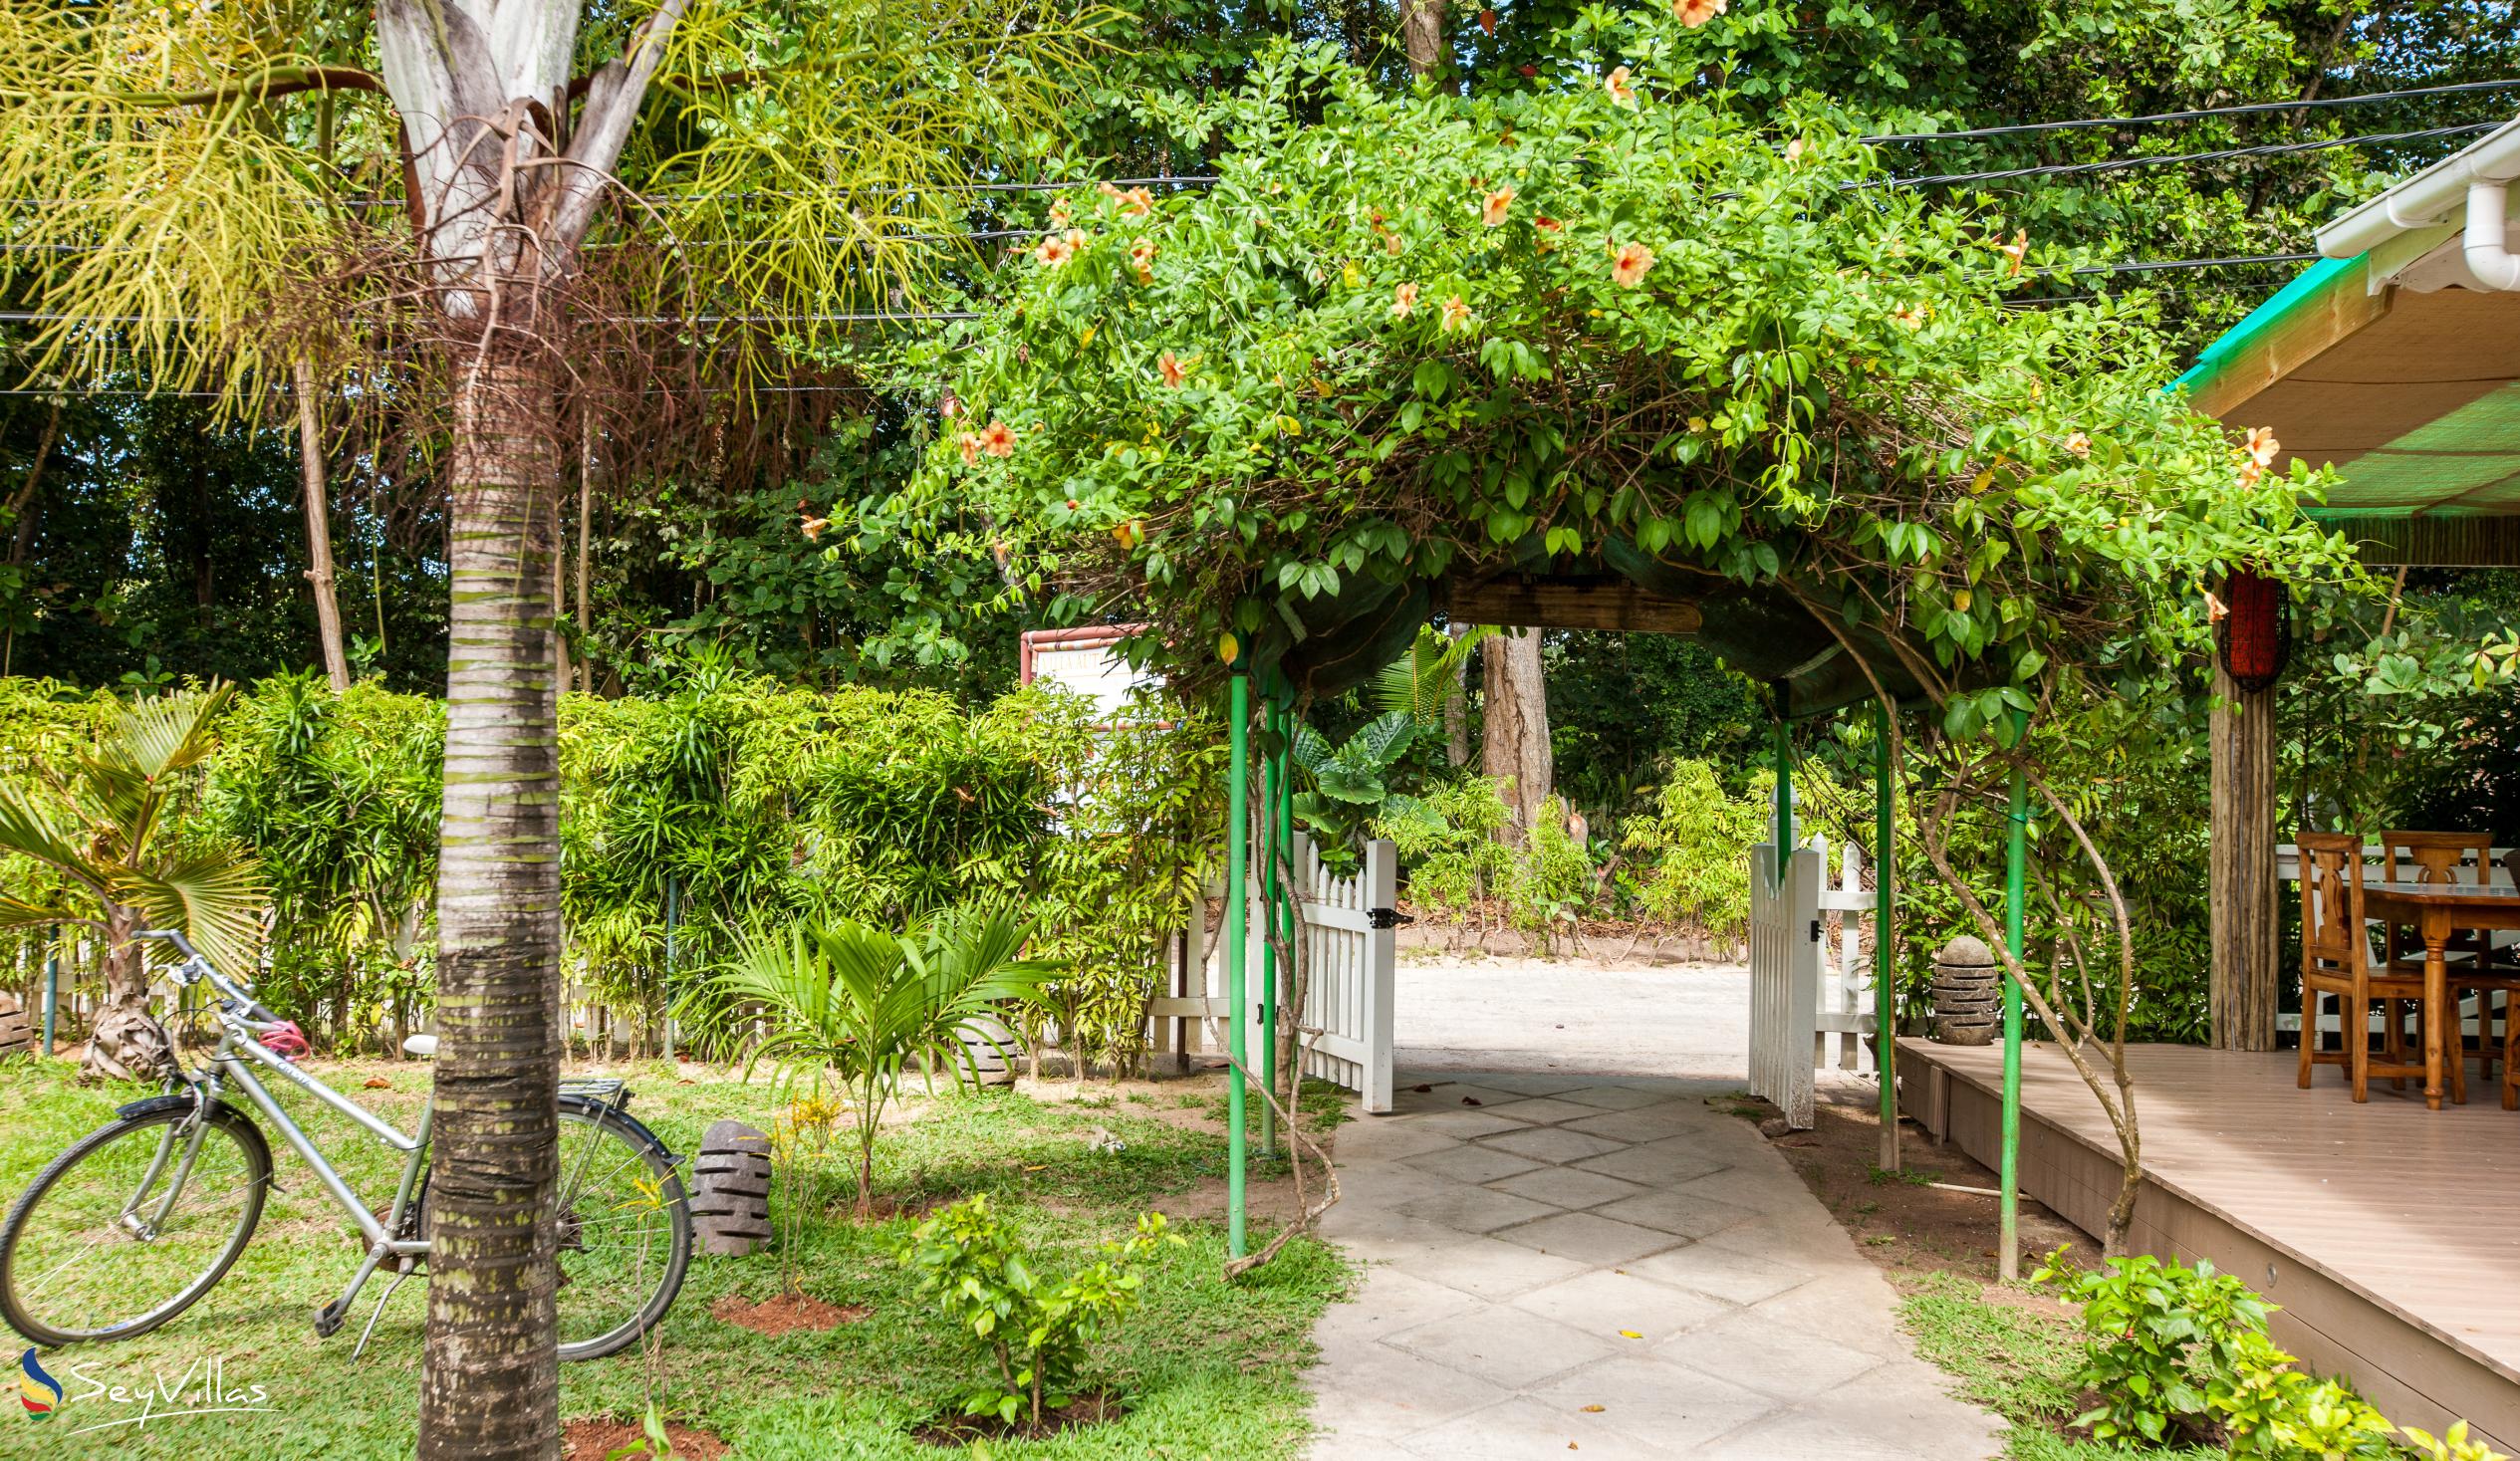 Foto 8: Villa Authentique - Aussenbereich - La Digue (Seychellen)